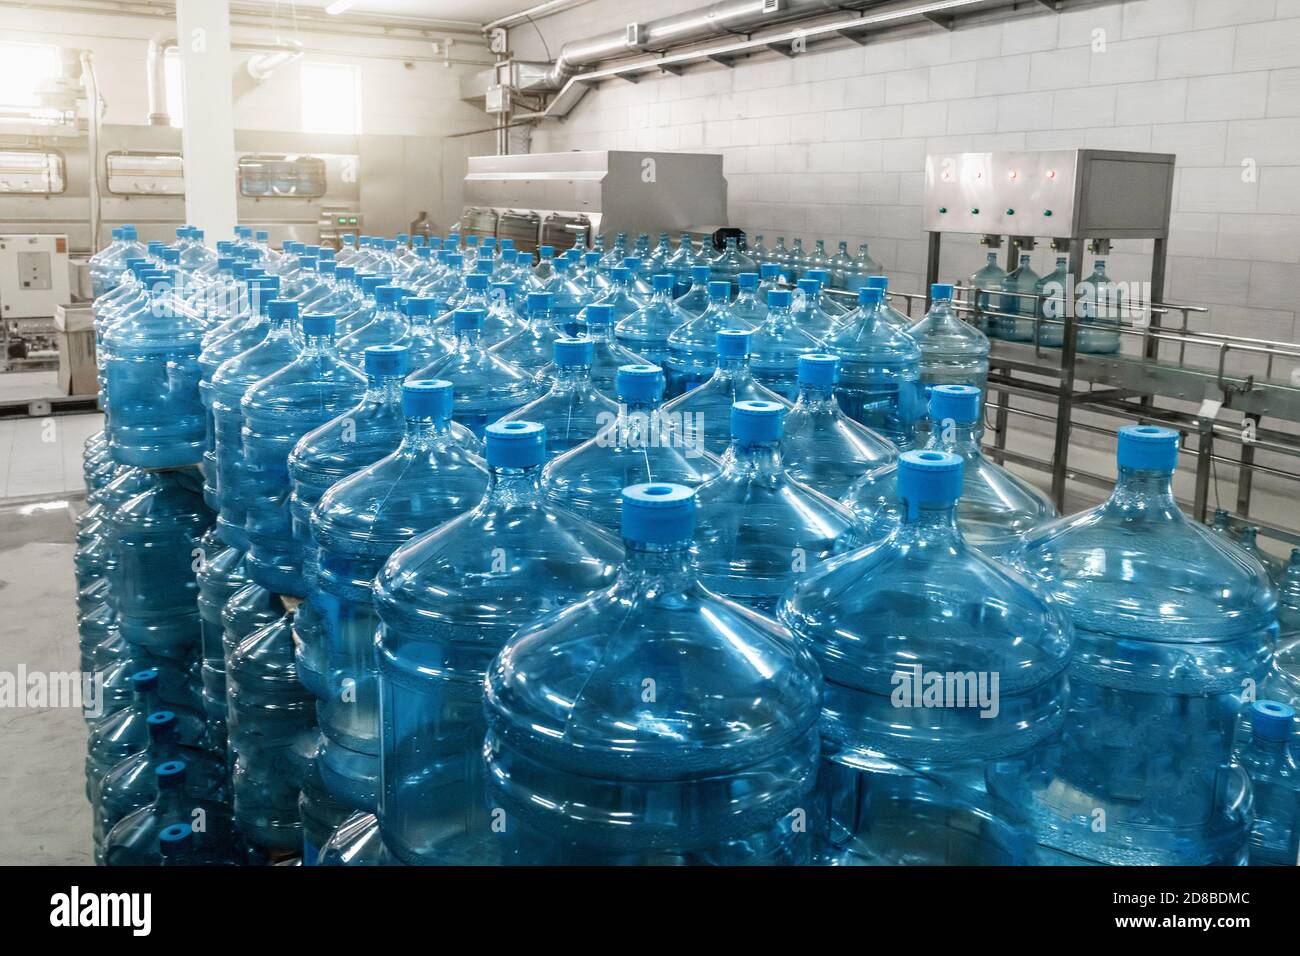 Galones o botellas de plástico de agua potable purificada en la fábrica de producción de agua. Foto de stock